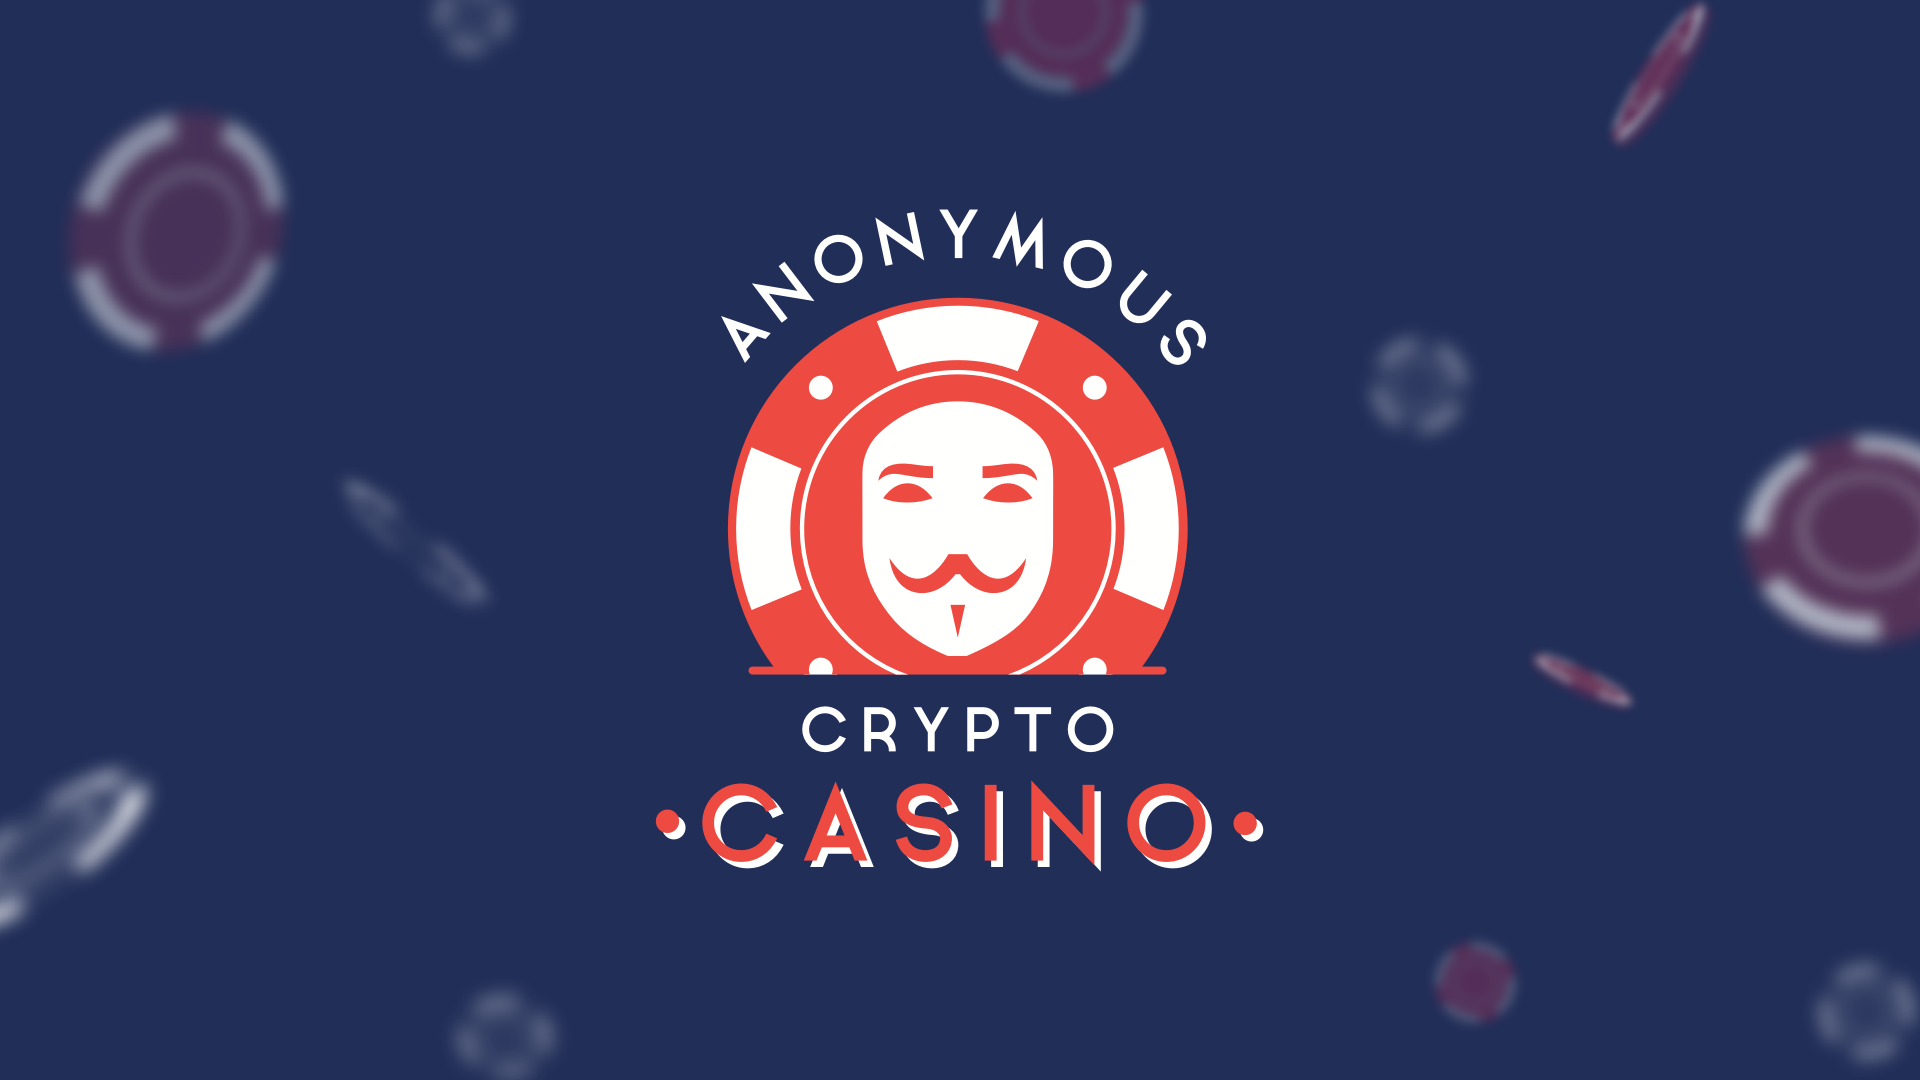 Crown bitcoin casino melbourne online bitcoin roulette